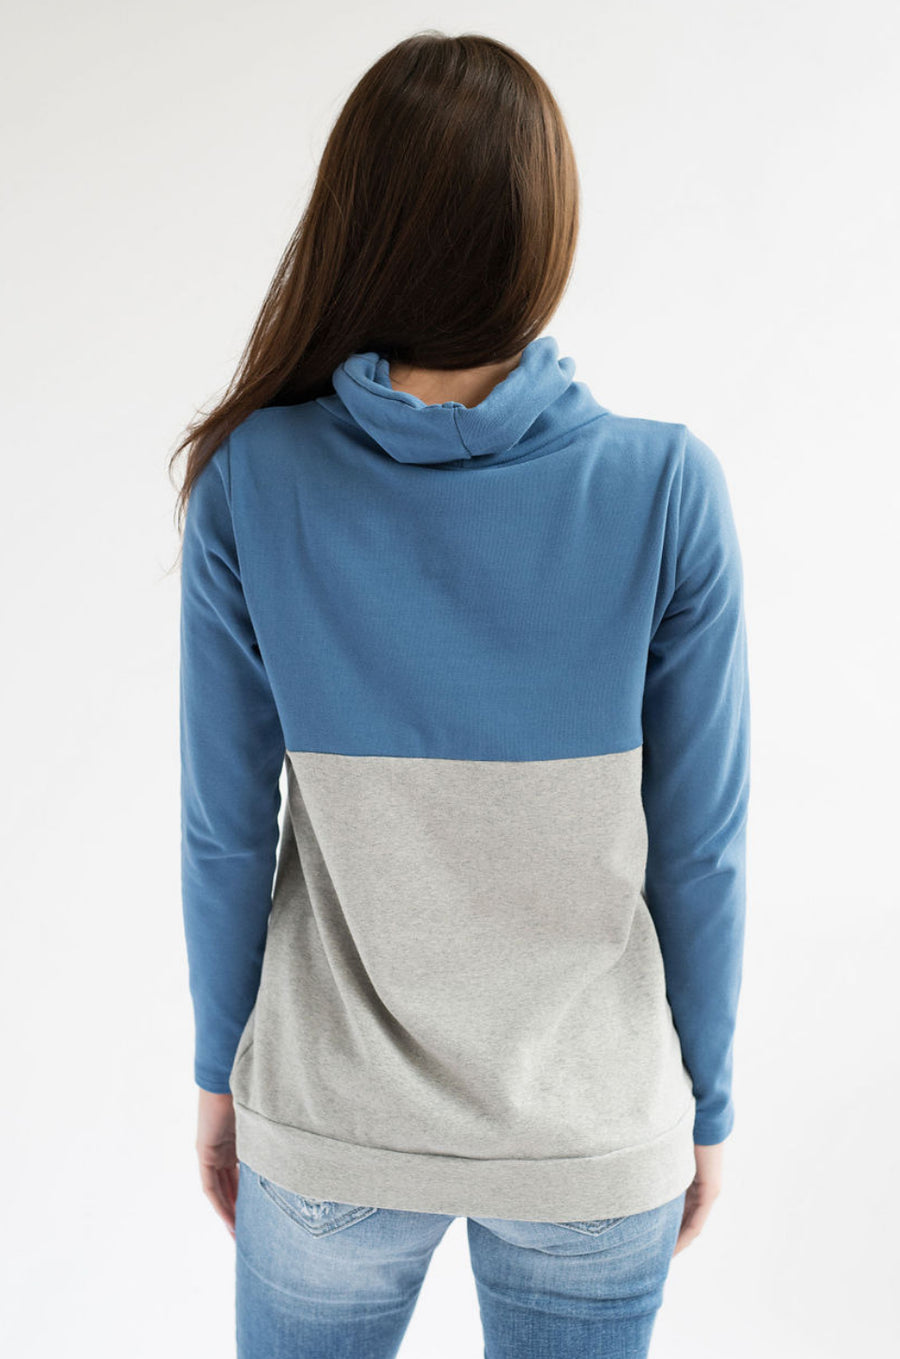 Nursing Sweatshirt for Breastfeeding - Hidden Zipper - Blue/Gray